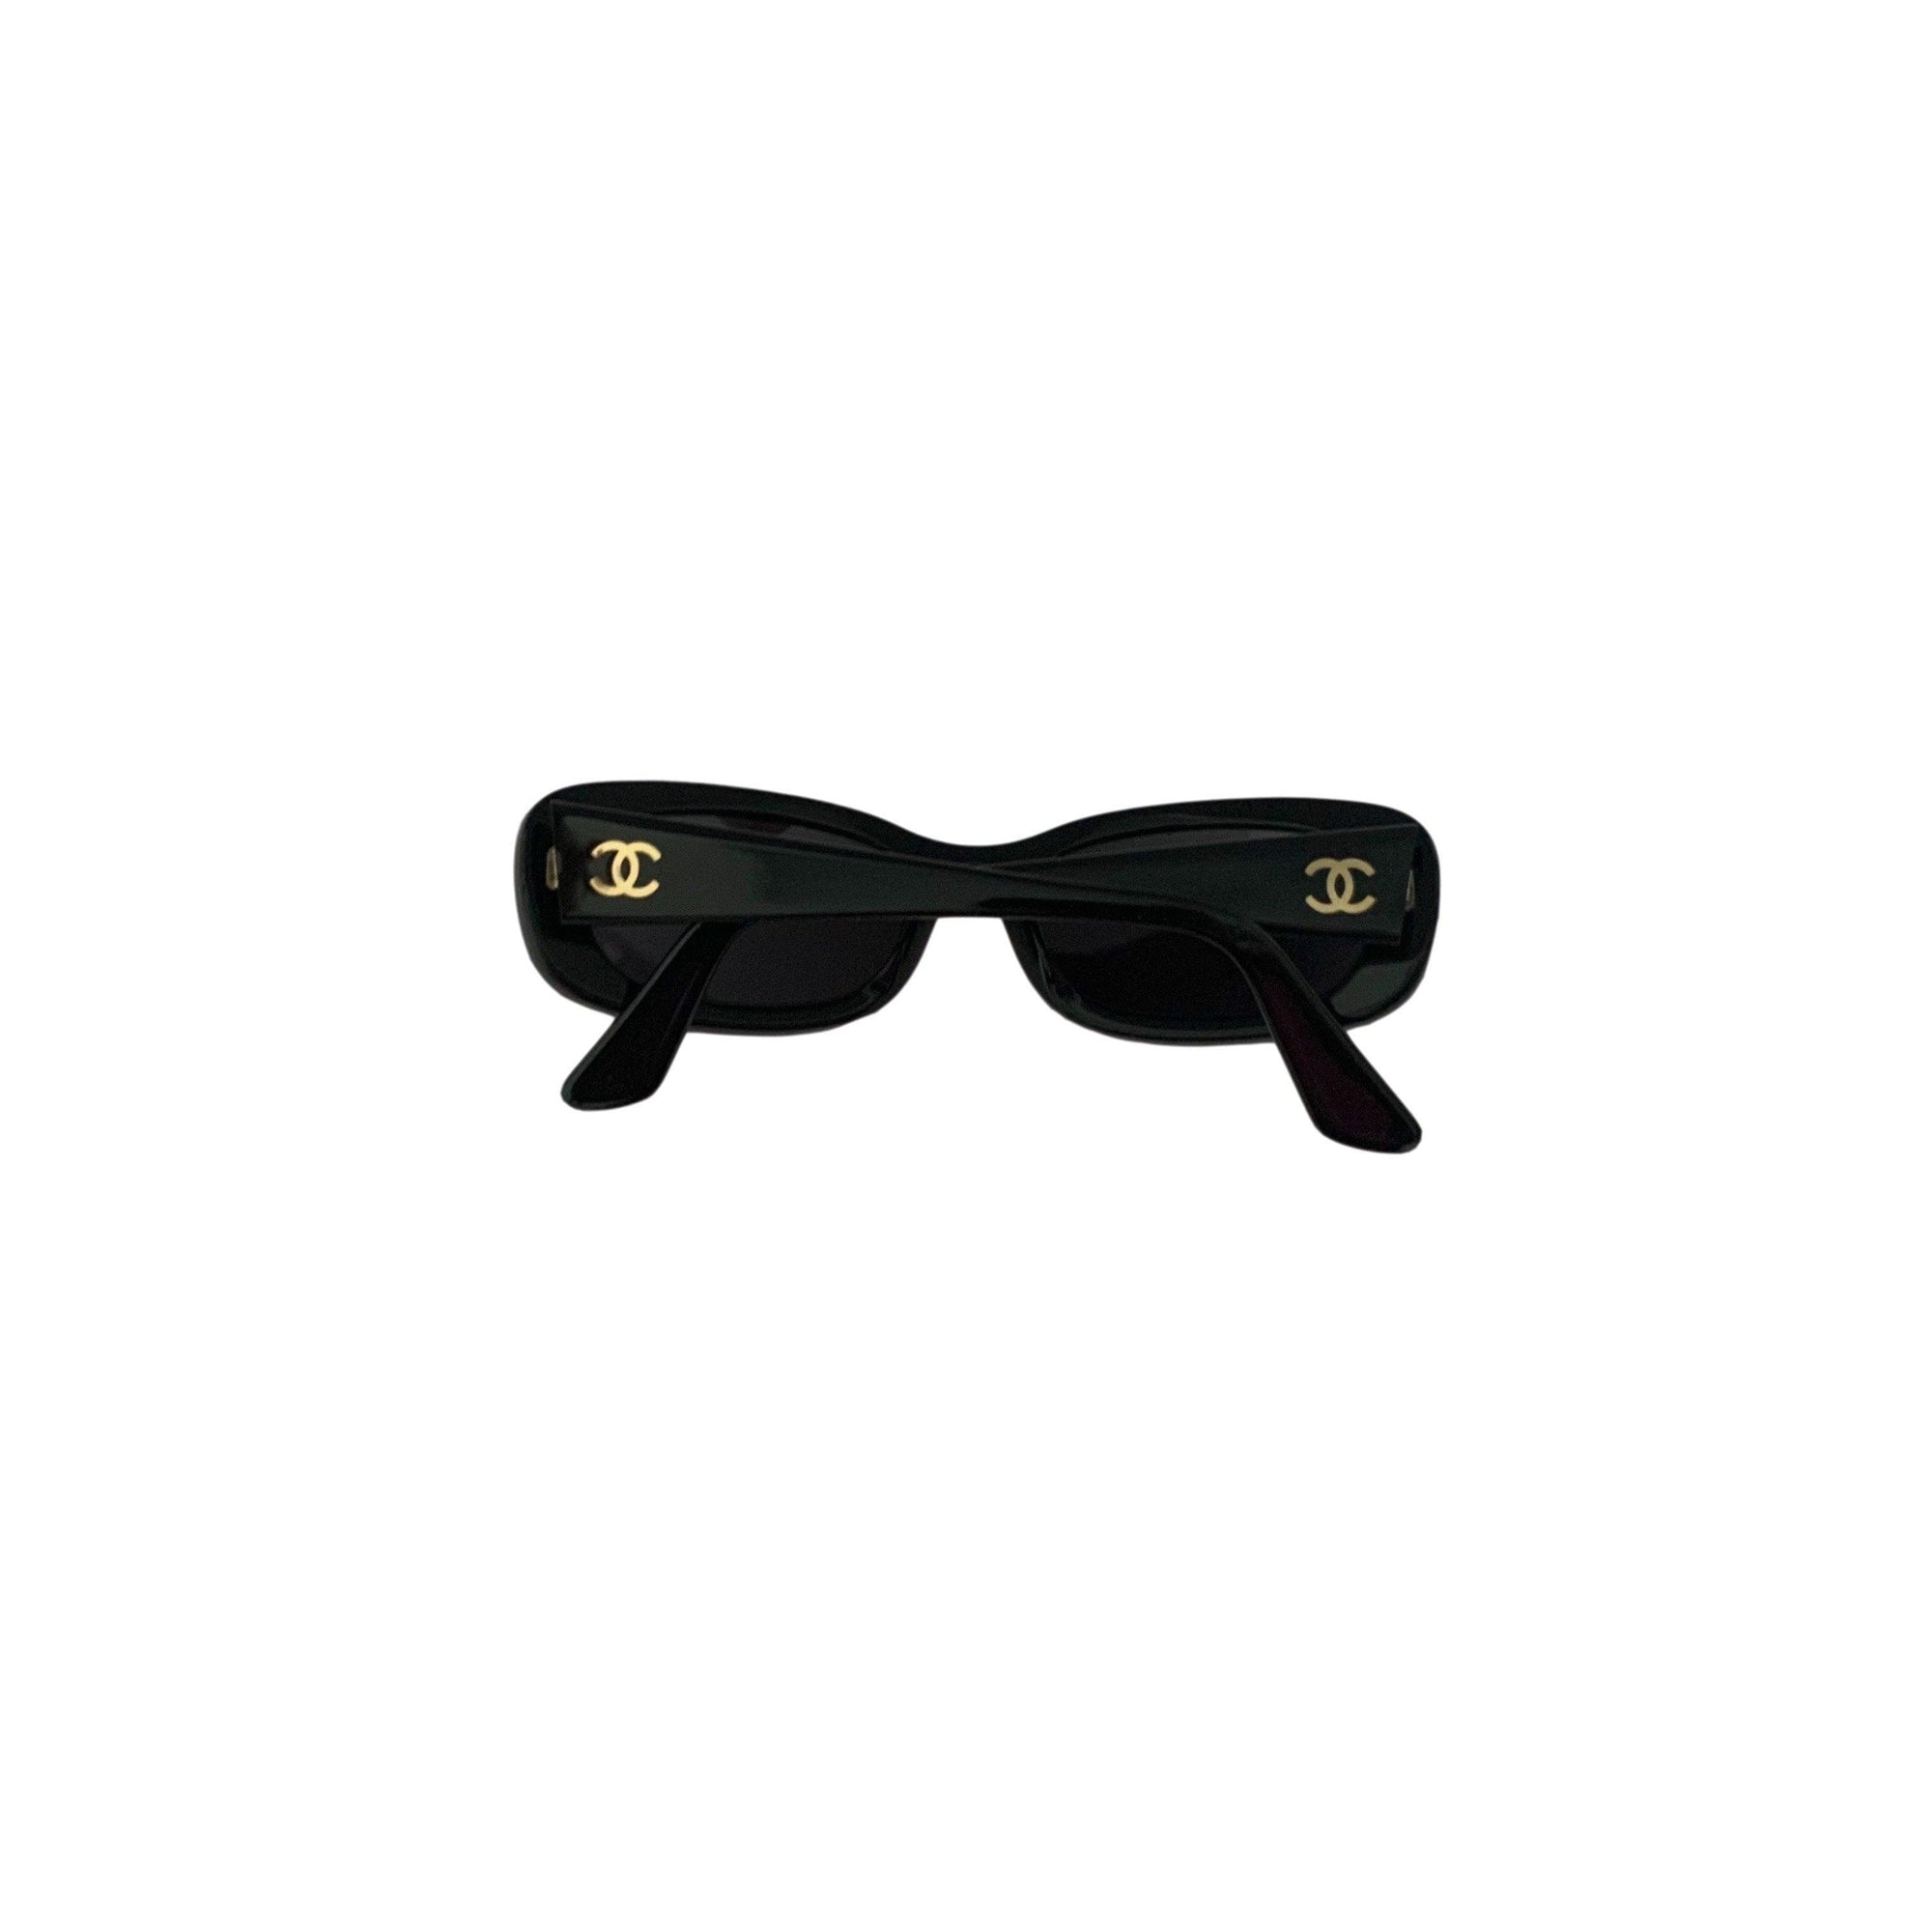 Chanel Black Small Logo Sunglasses - Sunglasses